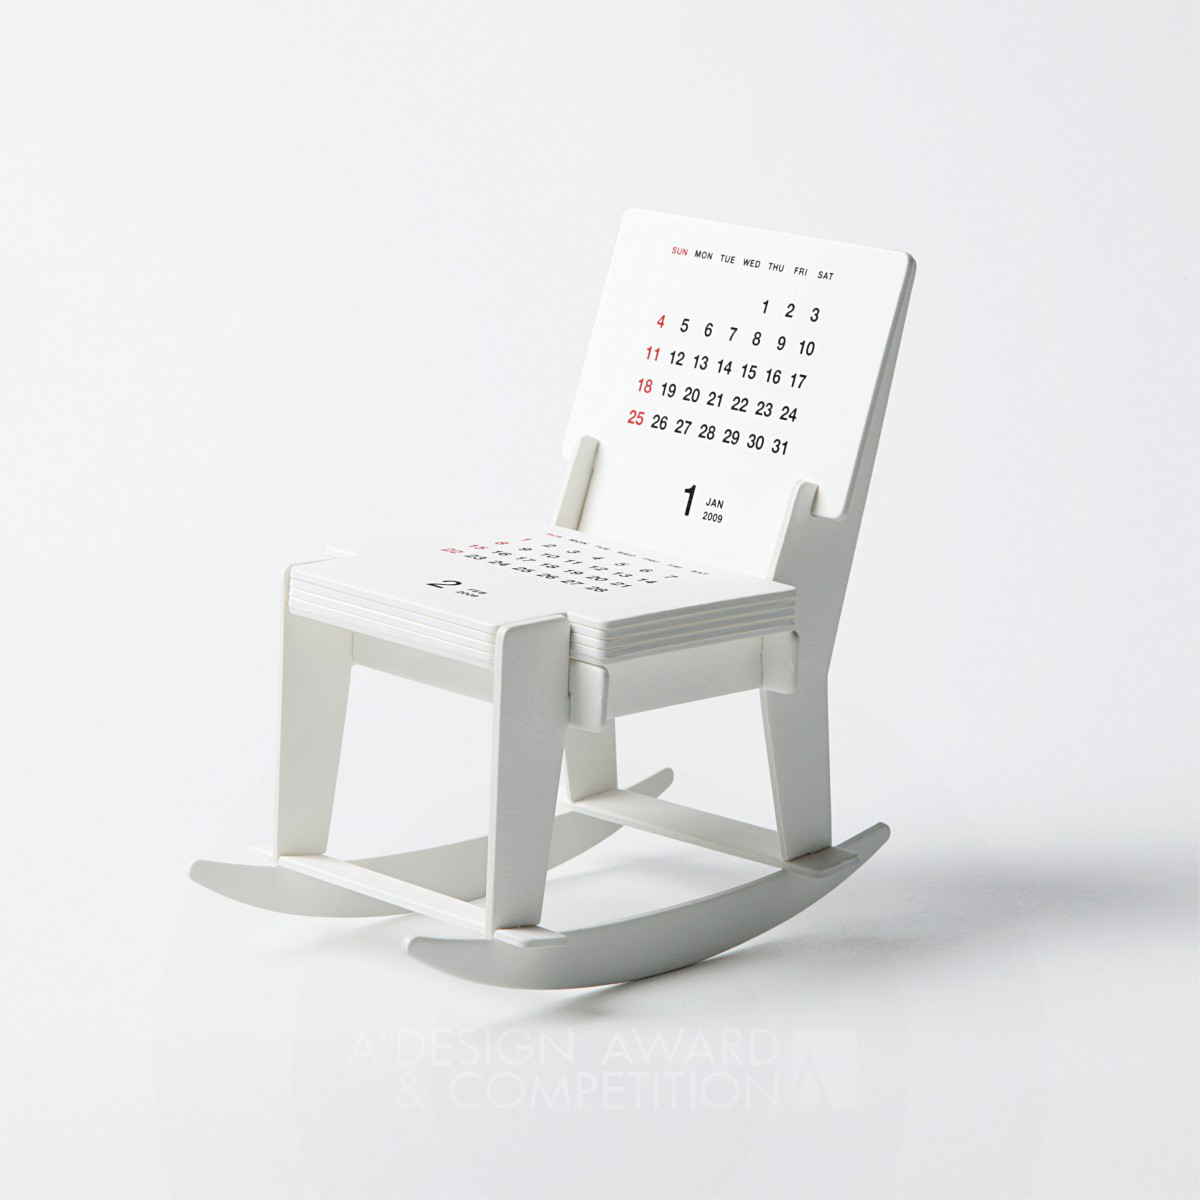 calendar 2013 “Rocking Chair” Calendar